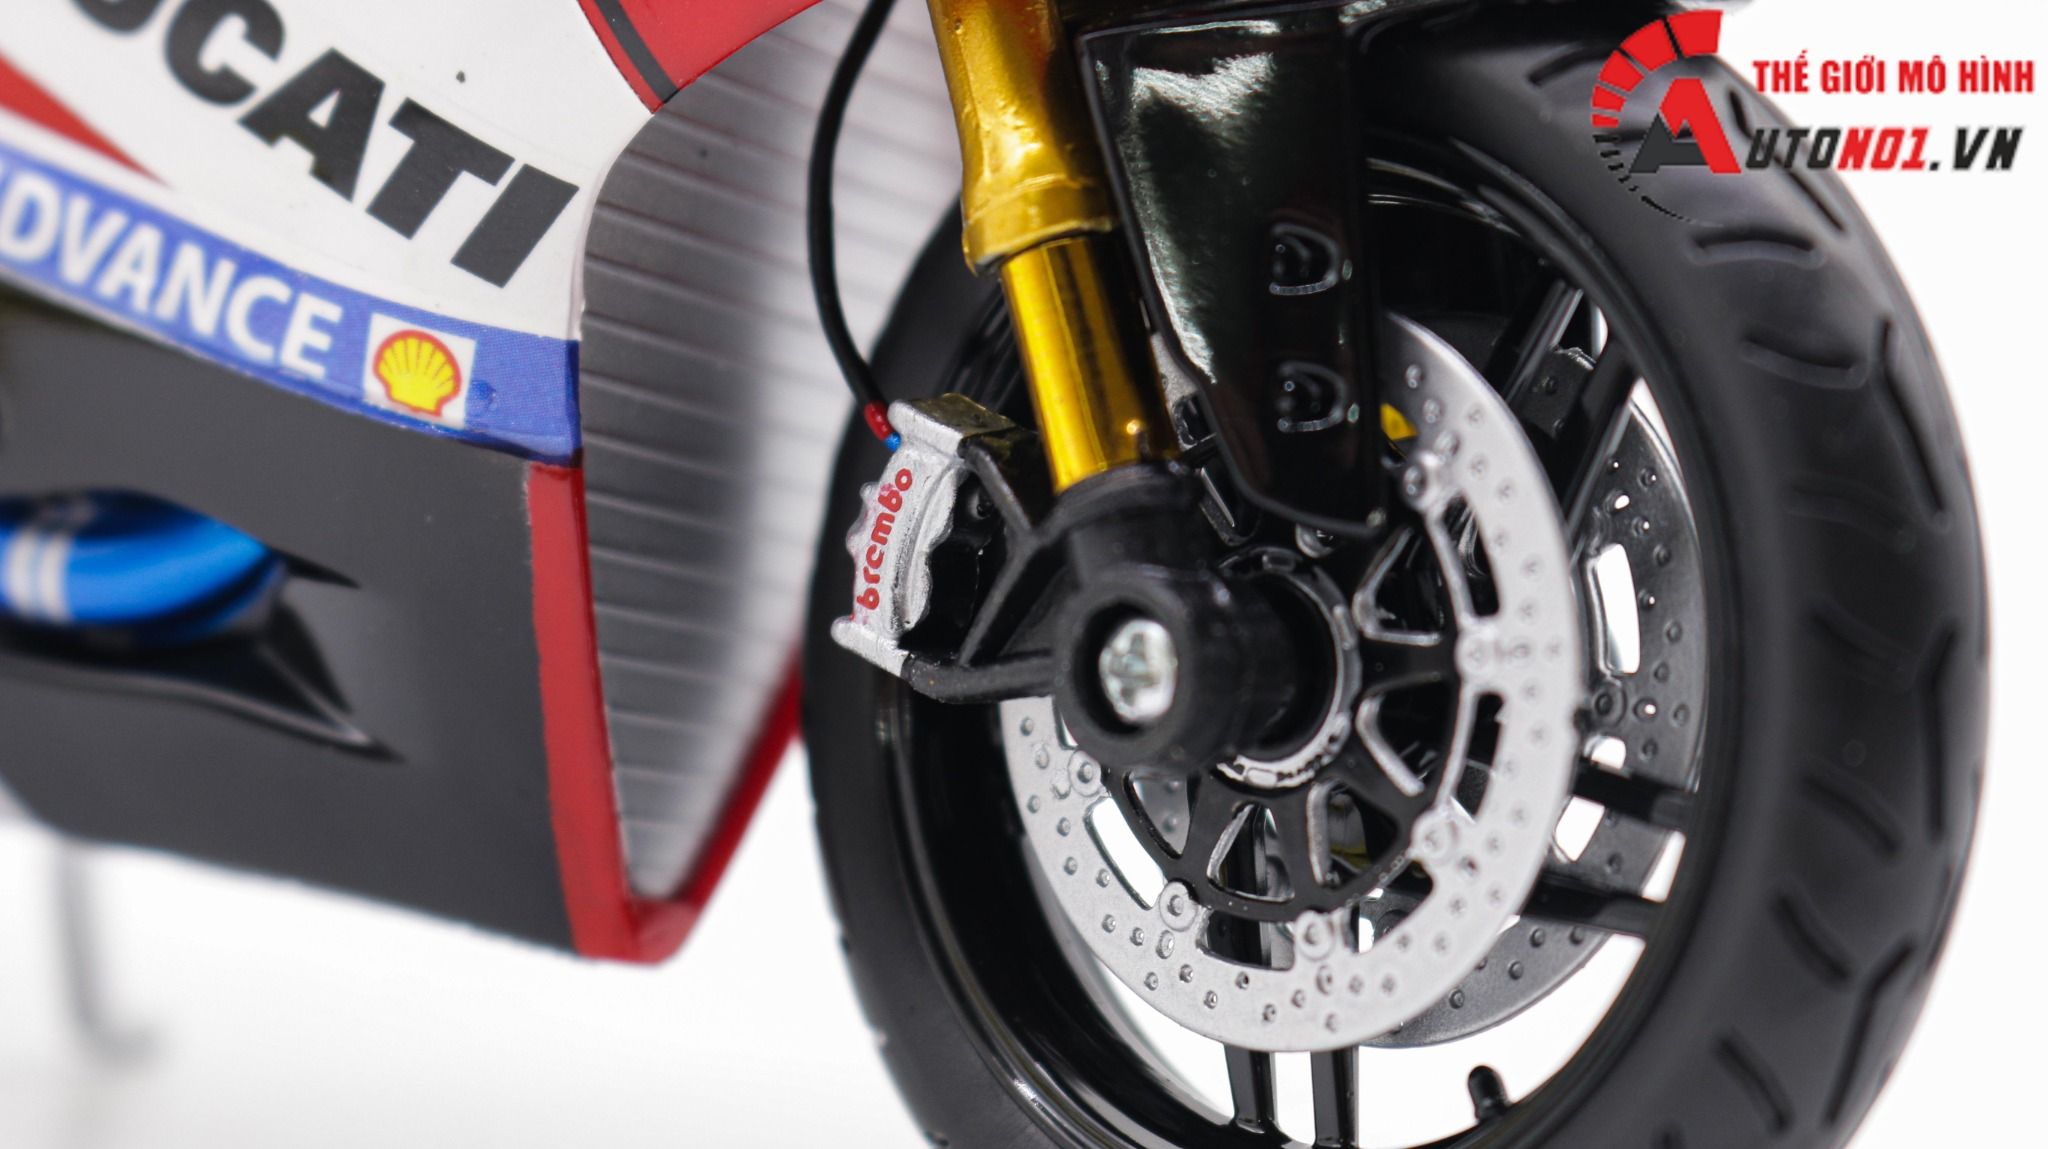  Mô hình xe độ Ducati 1199 Panigale Advance Custom Nồi Khô 1:12 Maisto D221b 